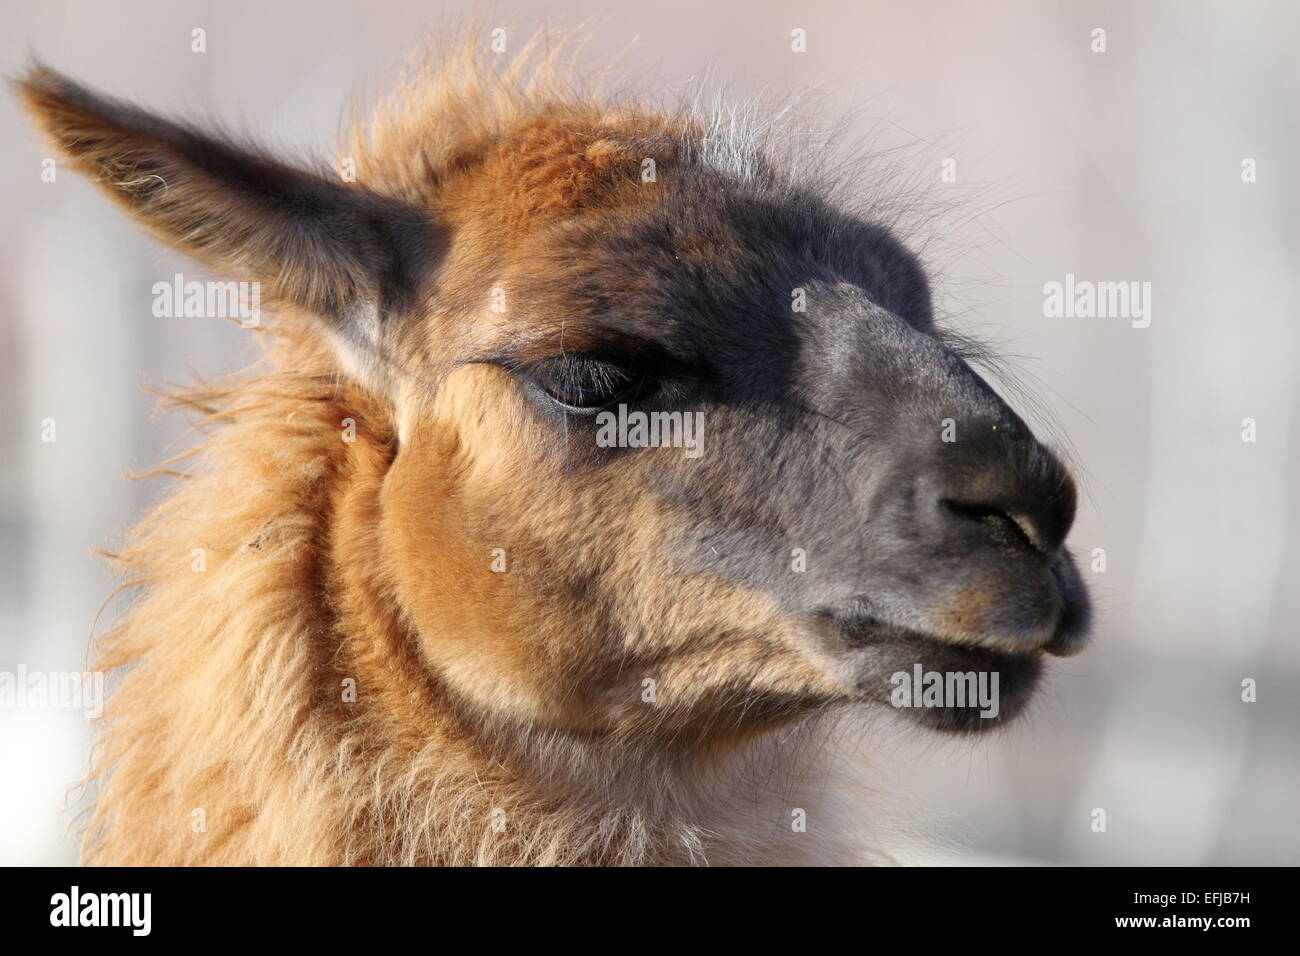 De gros plan de la tête de lama, portrait d'animal domestique Banque D'Images